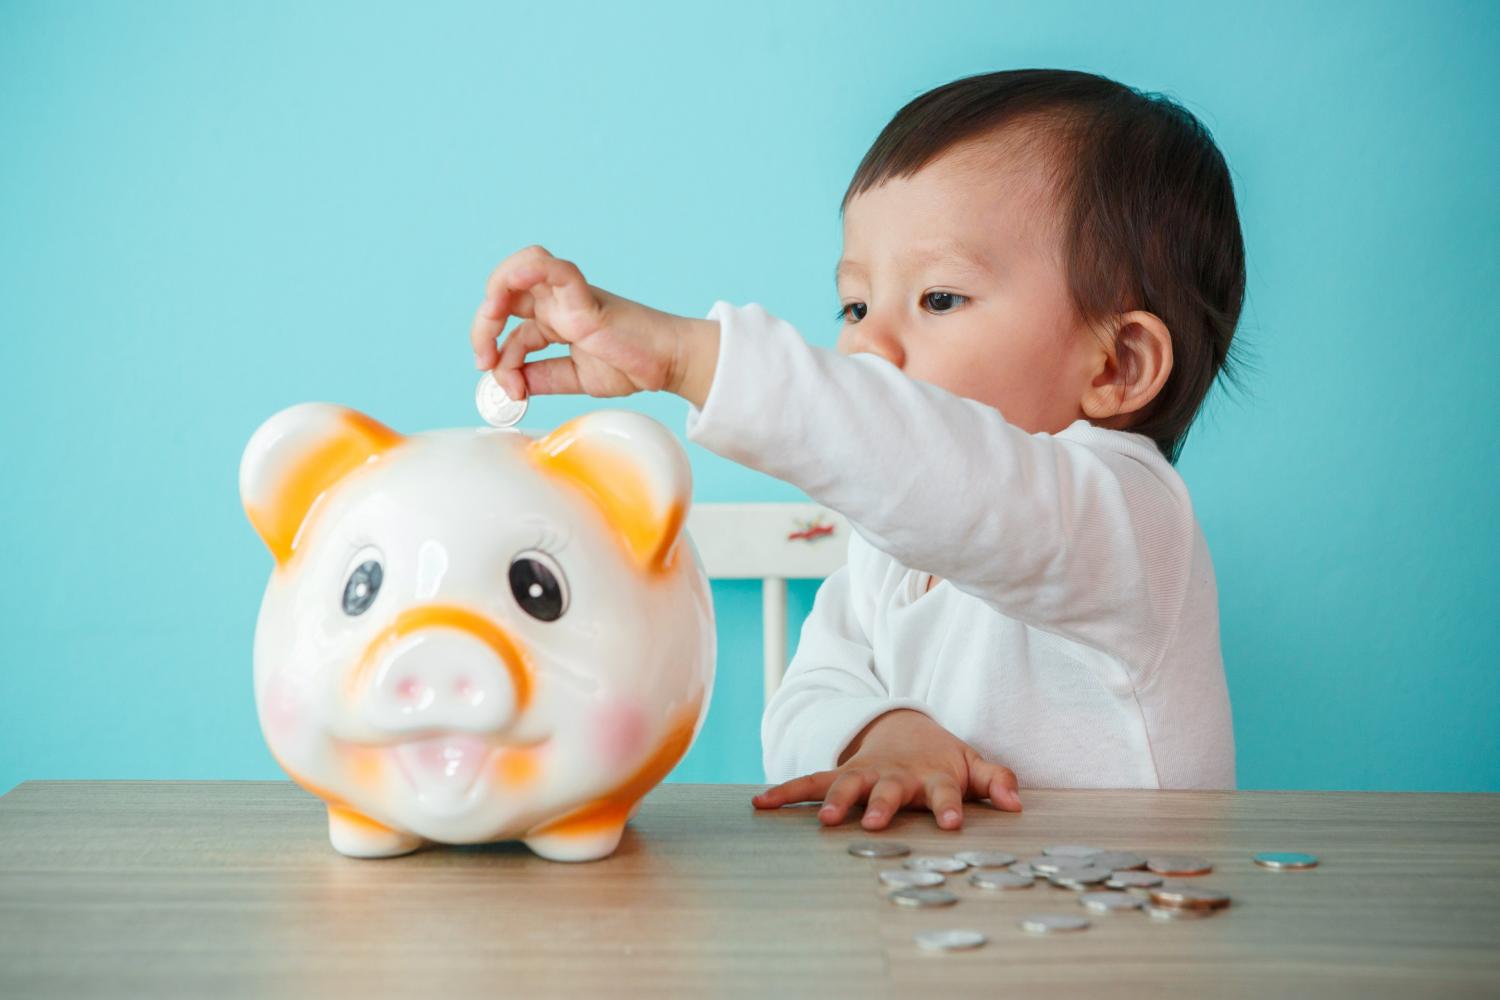 Baby putting money in a piggybank